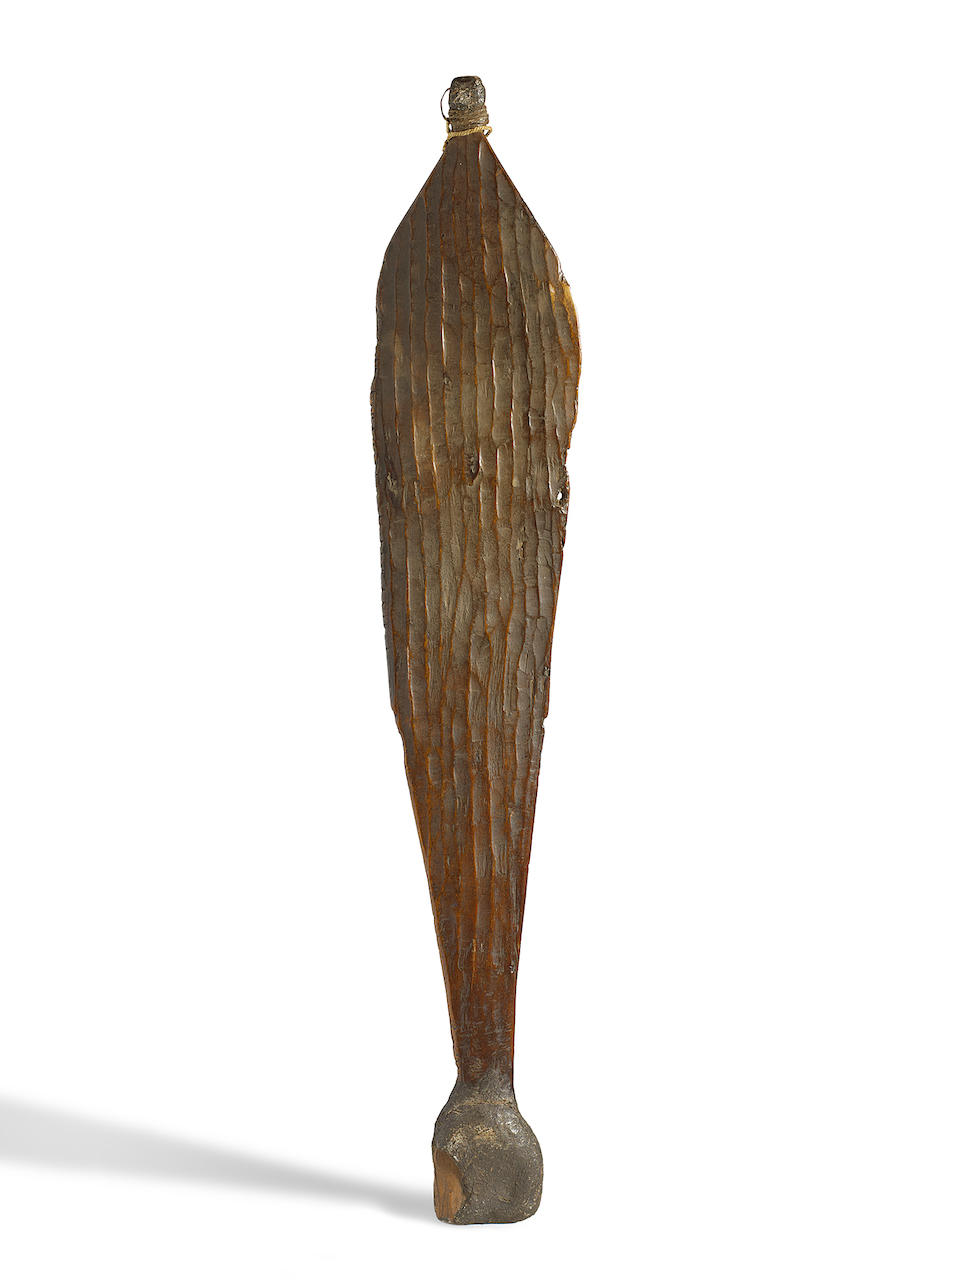 Maker Unknown An early spearthrower, Pilbara region, Western Australia length: 61.5cm (24 3/16in).